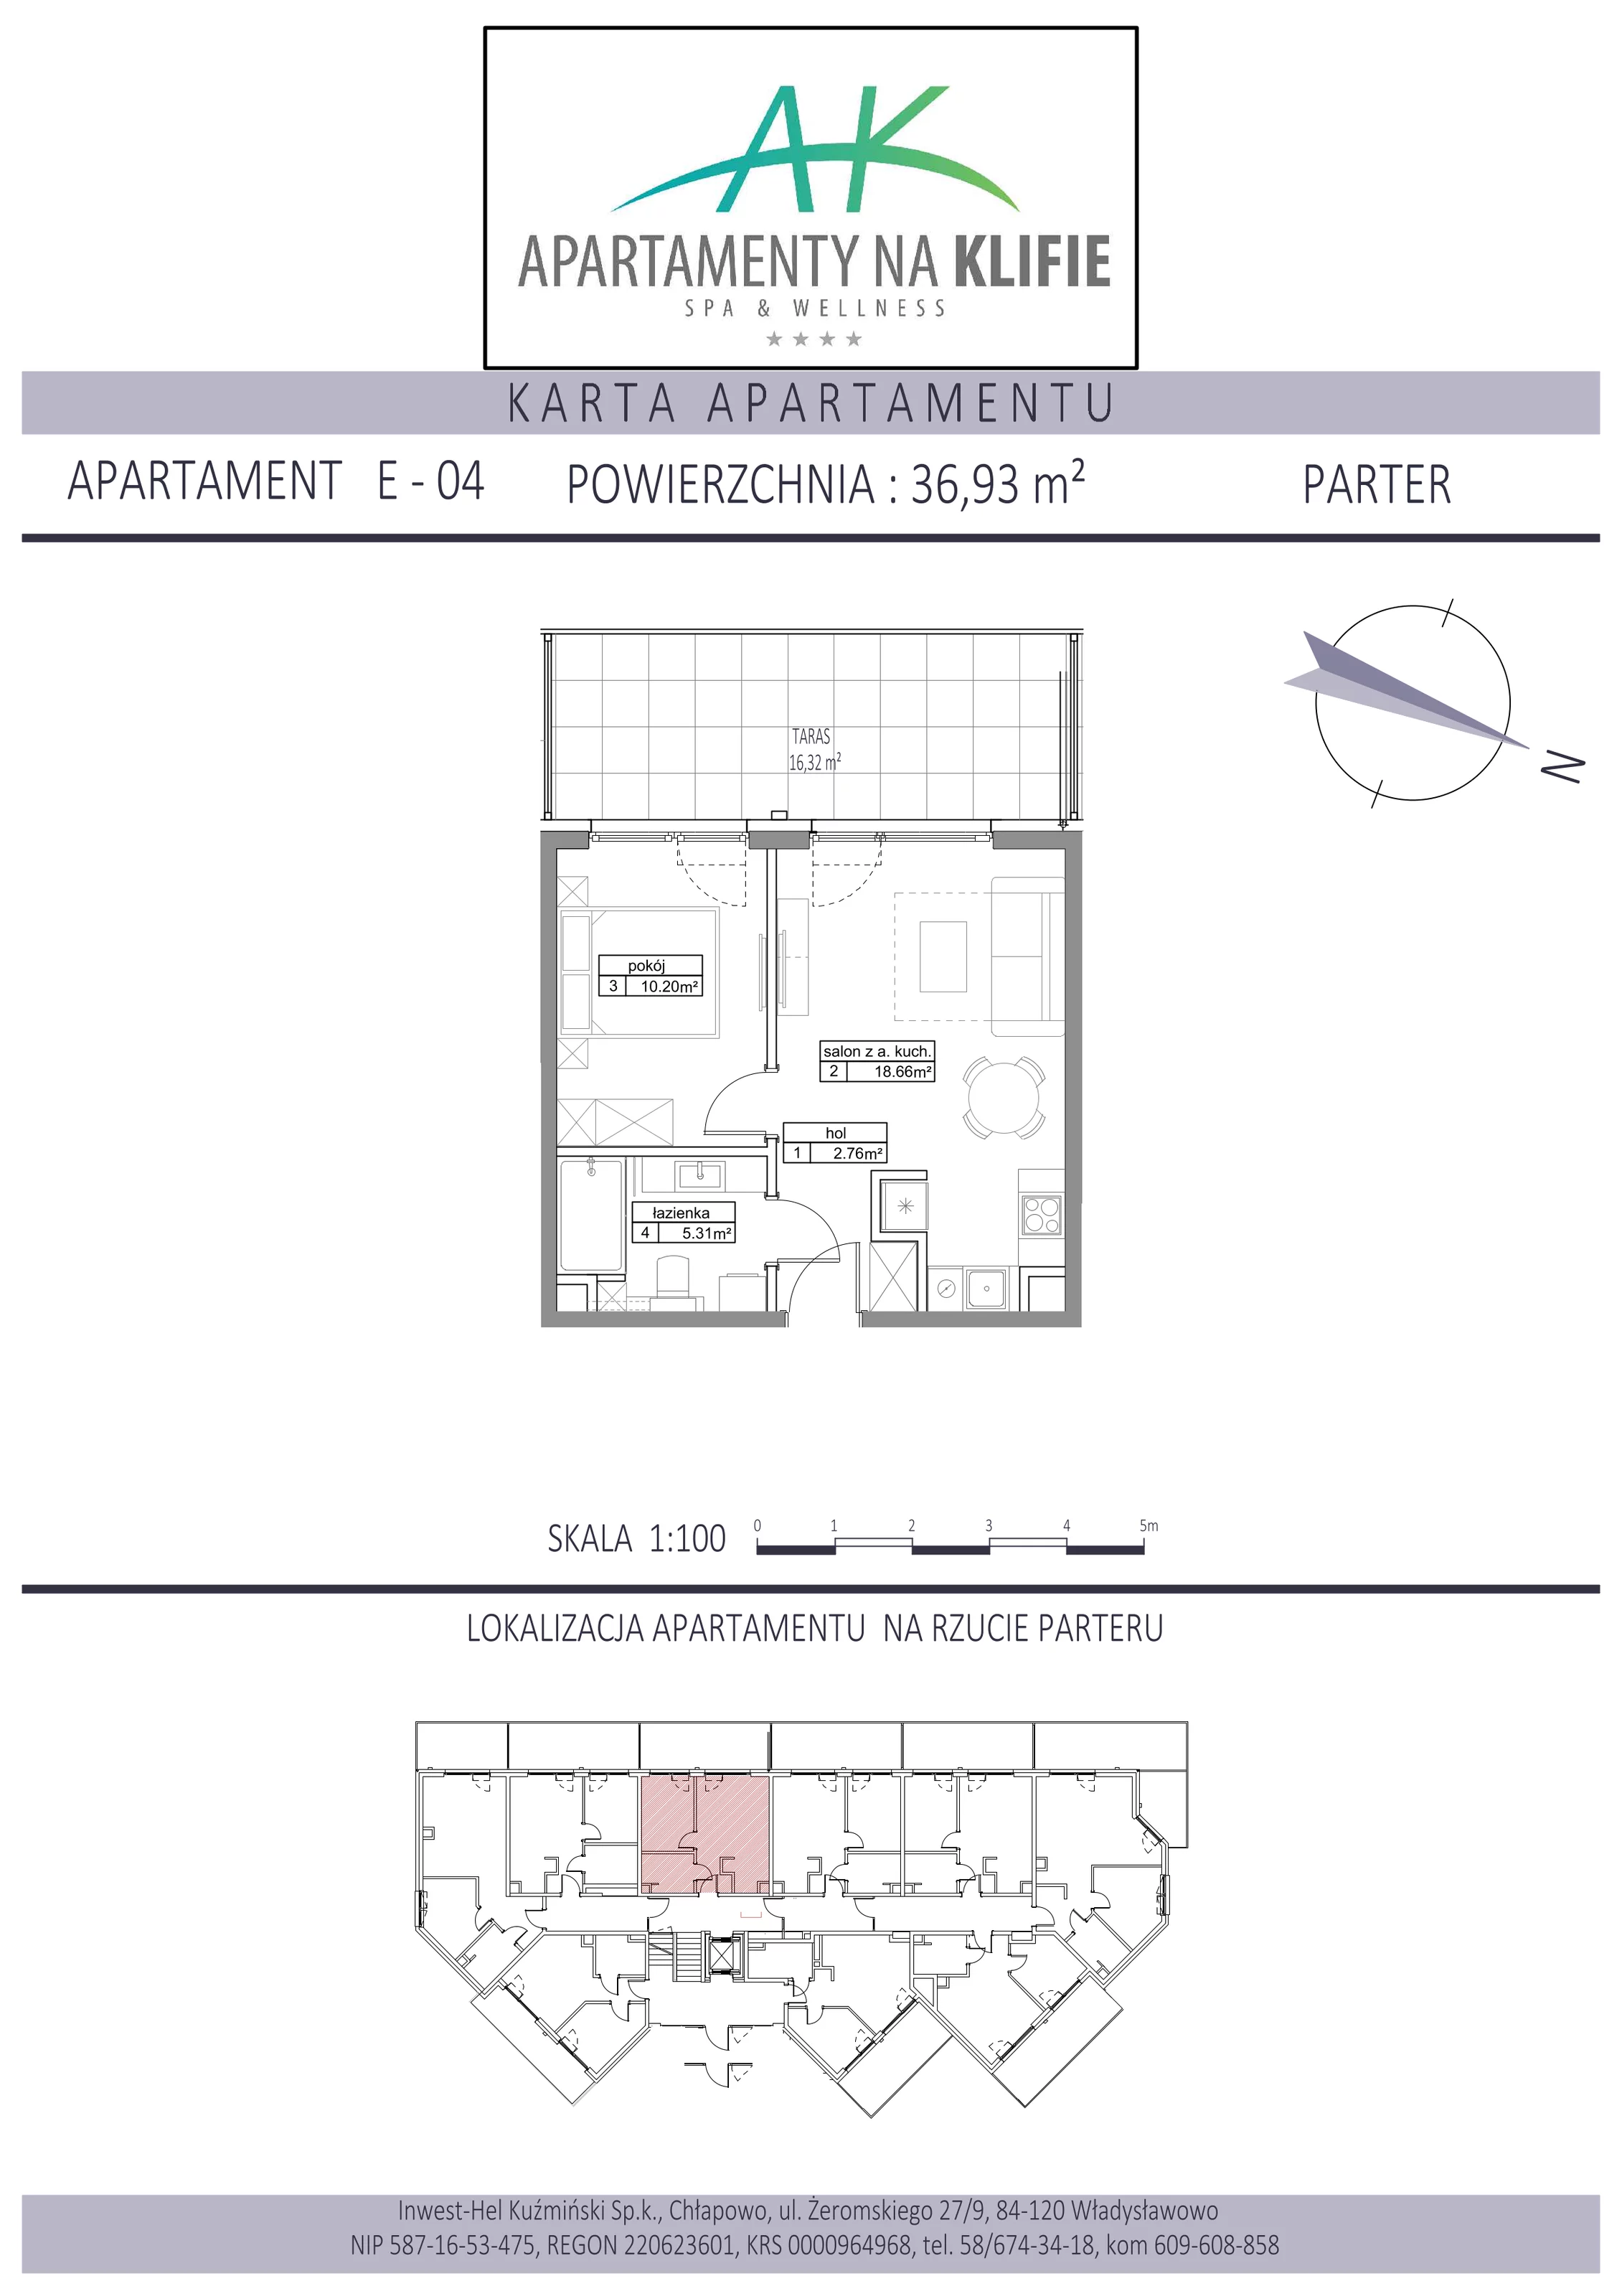 Apartament 36,93 m², parter, oferta nr E-04, Apartamenty na Klifie, Władysławowo, Chłapowo, ul. Żeromskiego 27